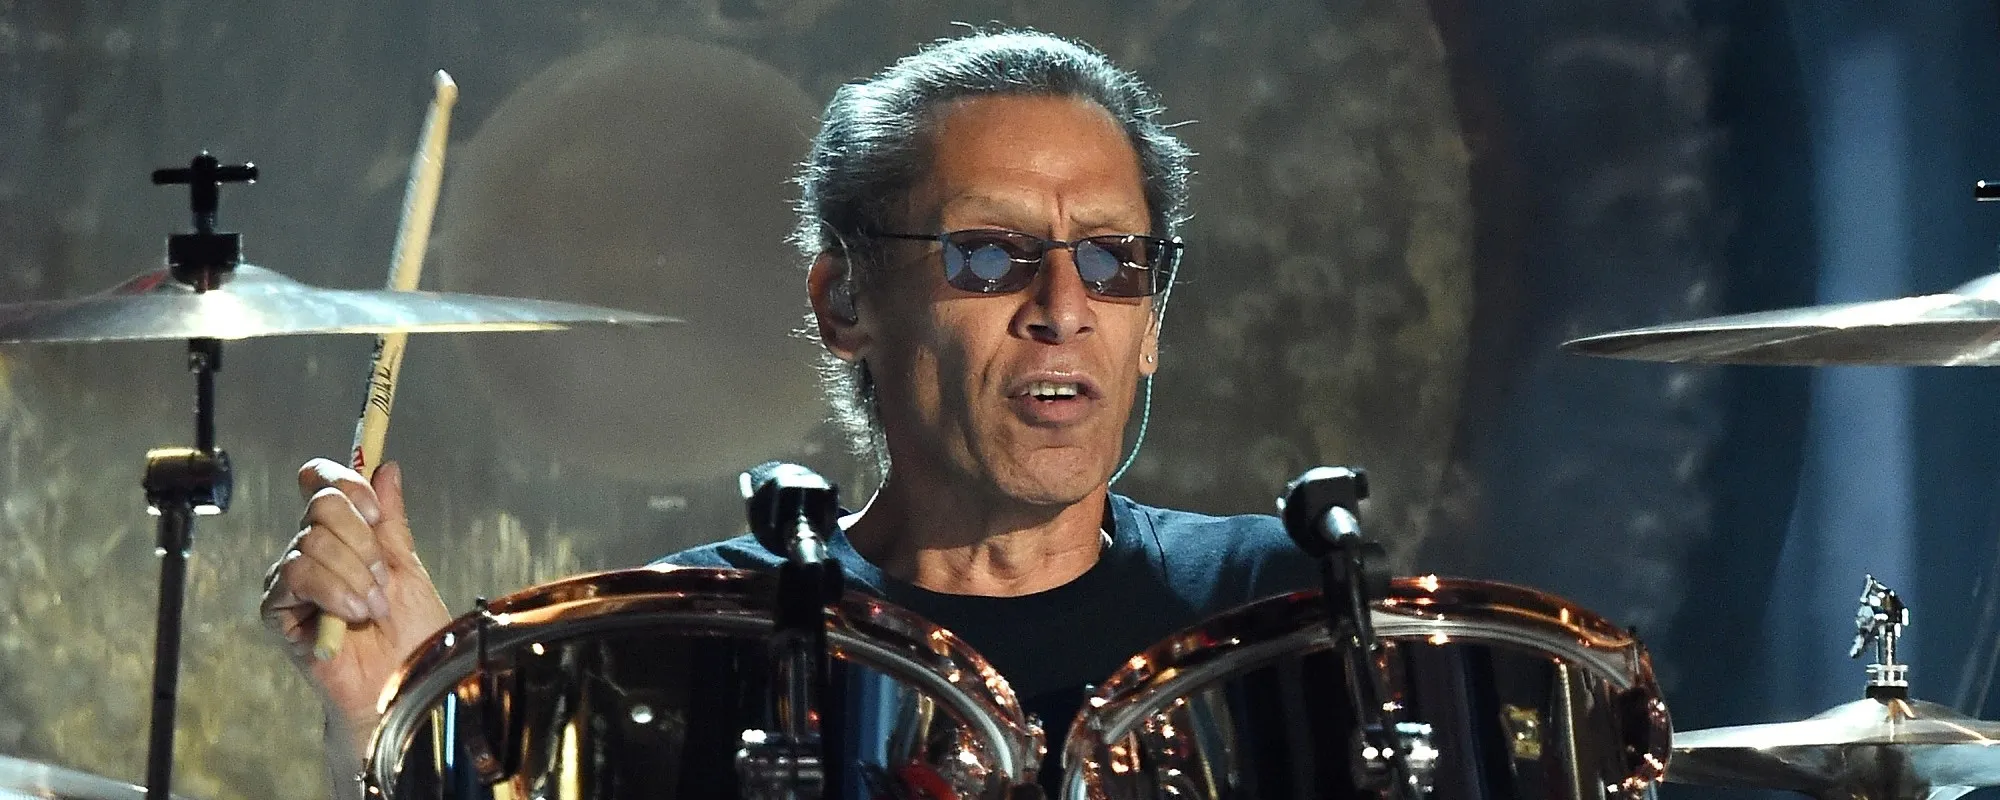 Van Halen Drummer Alex Van Halen Has Written a Memoir Titled ‘Brothers’ That’s Set to Drop Soon